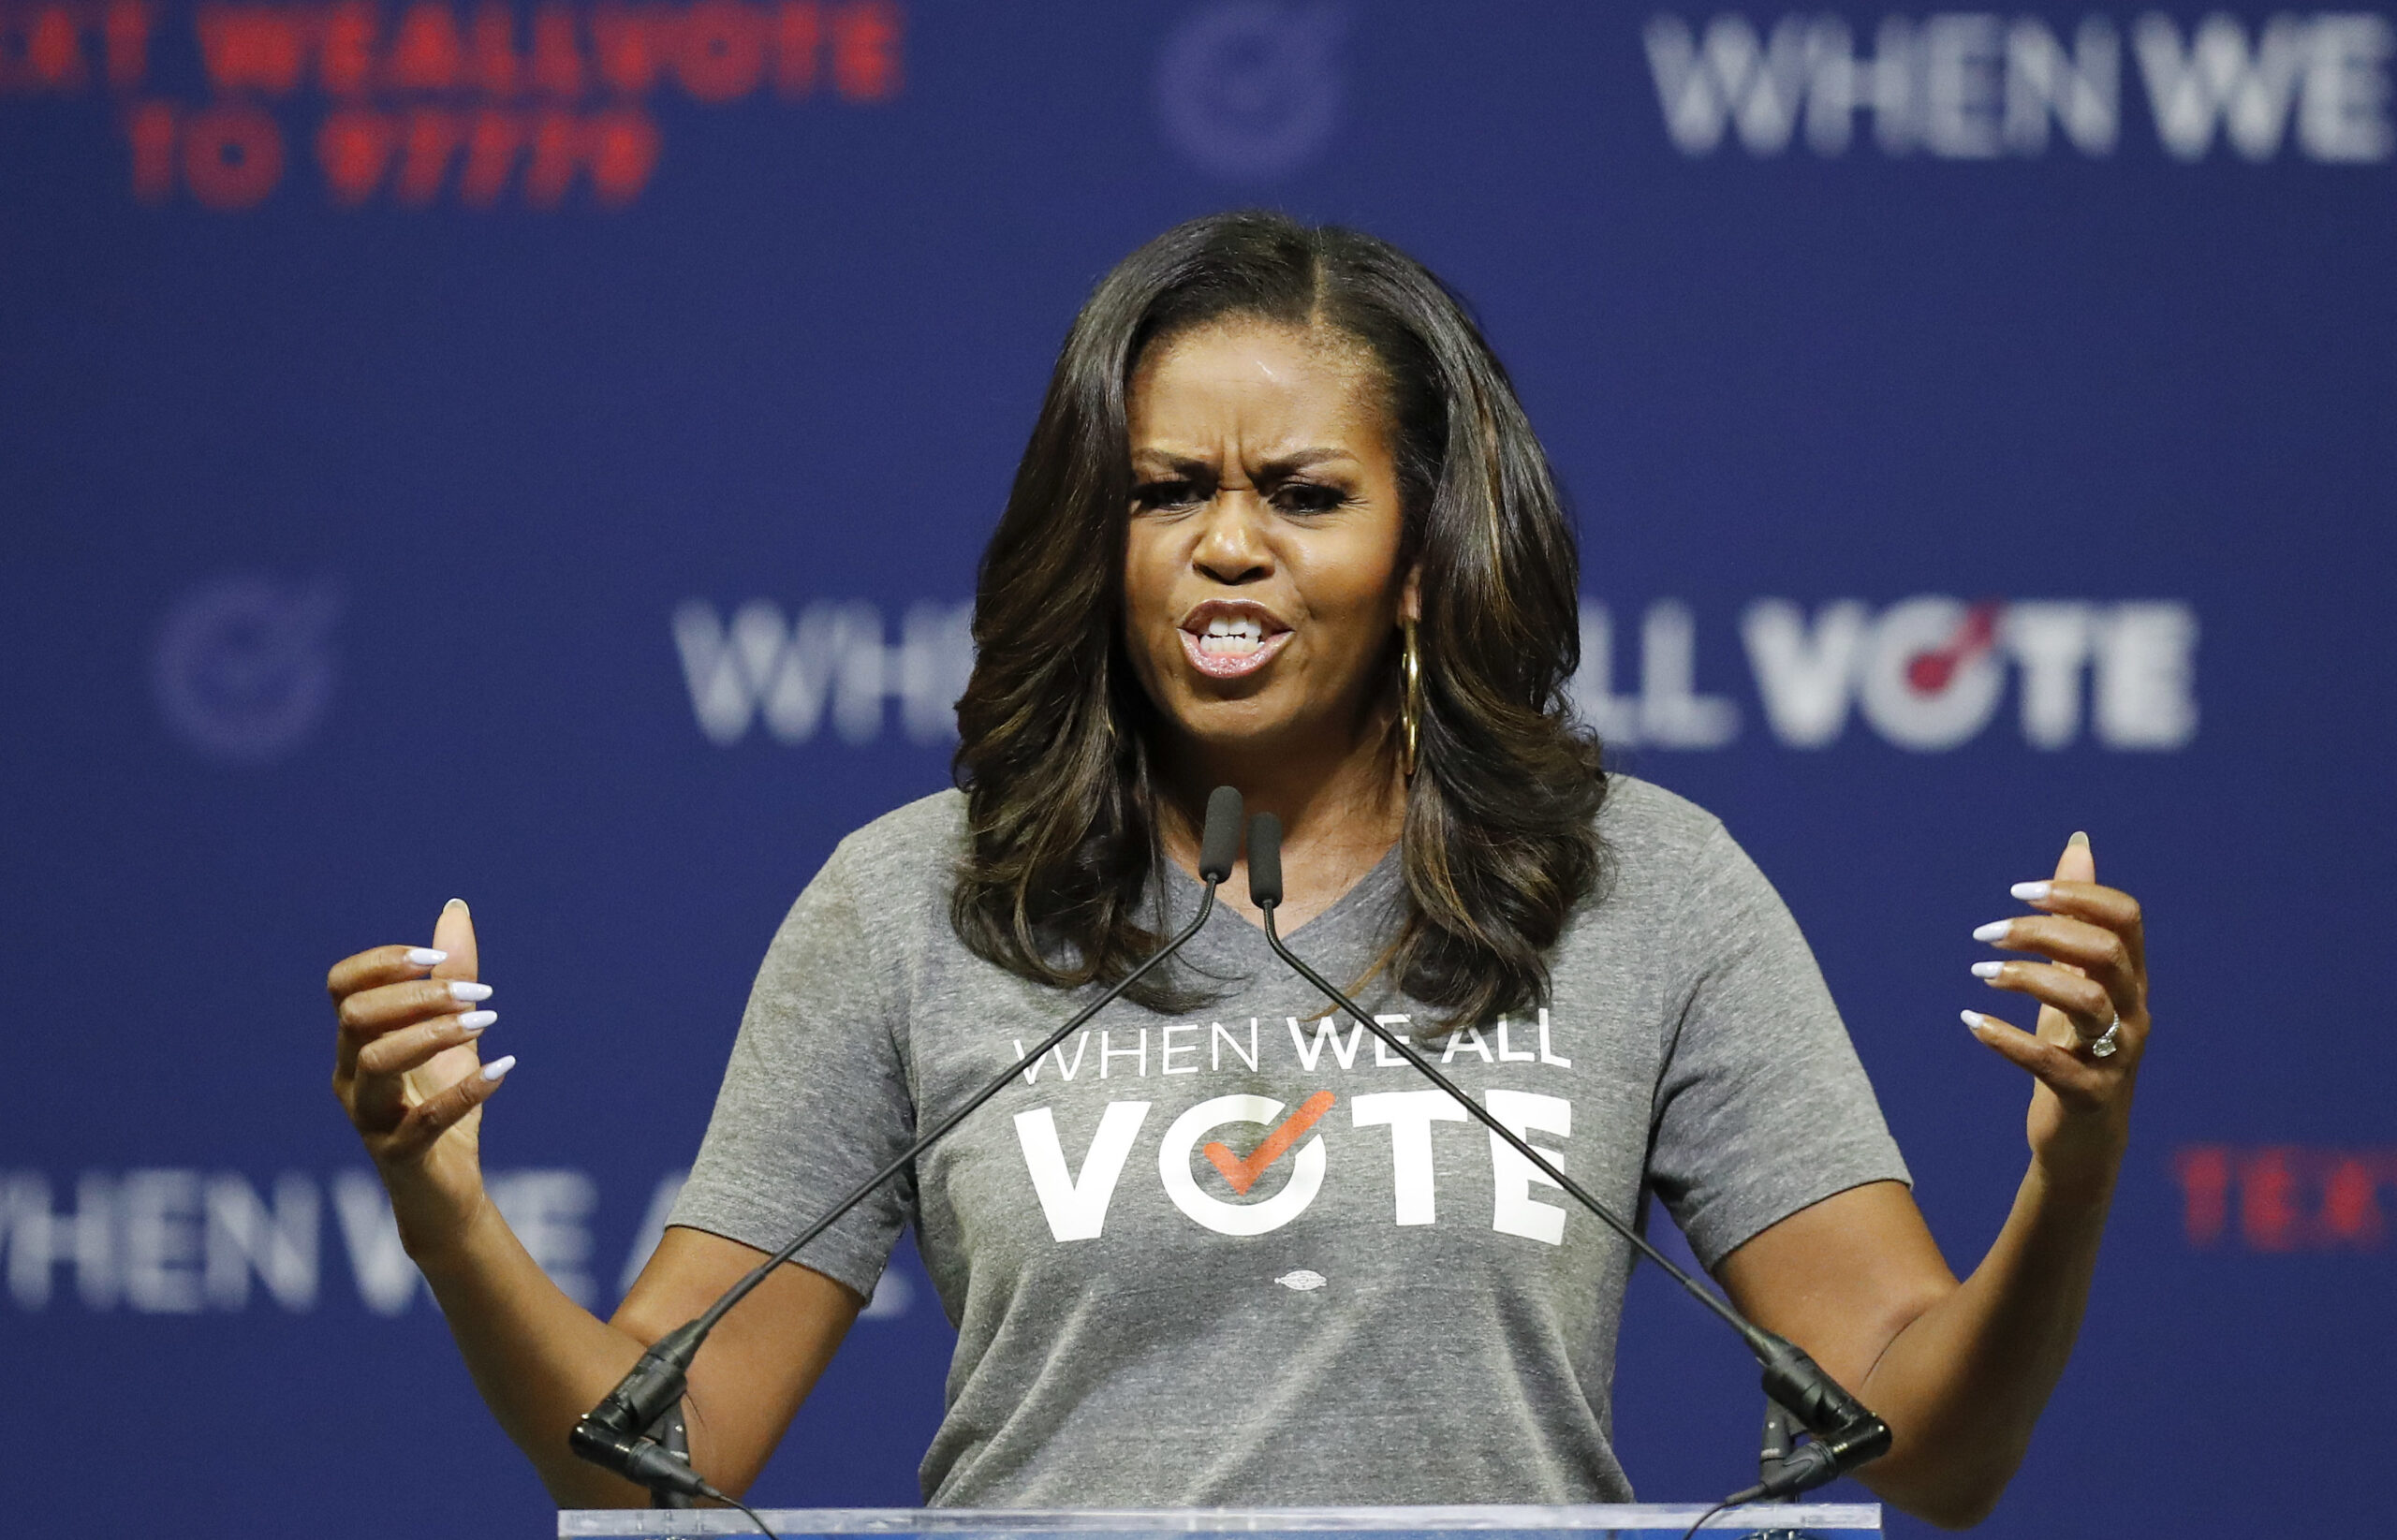 Michelle Obama sustituirá a Joe Biden como candidata demócrata: la predicción del senador Ted Cruz – El Diario NY